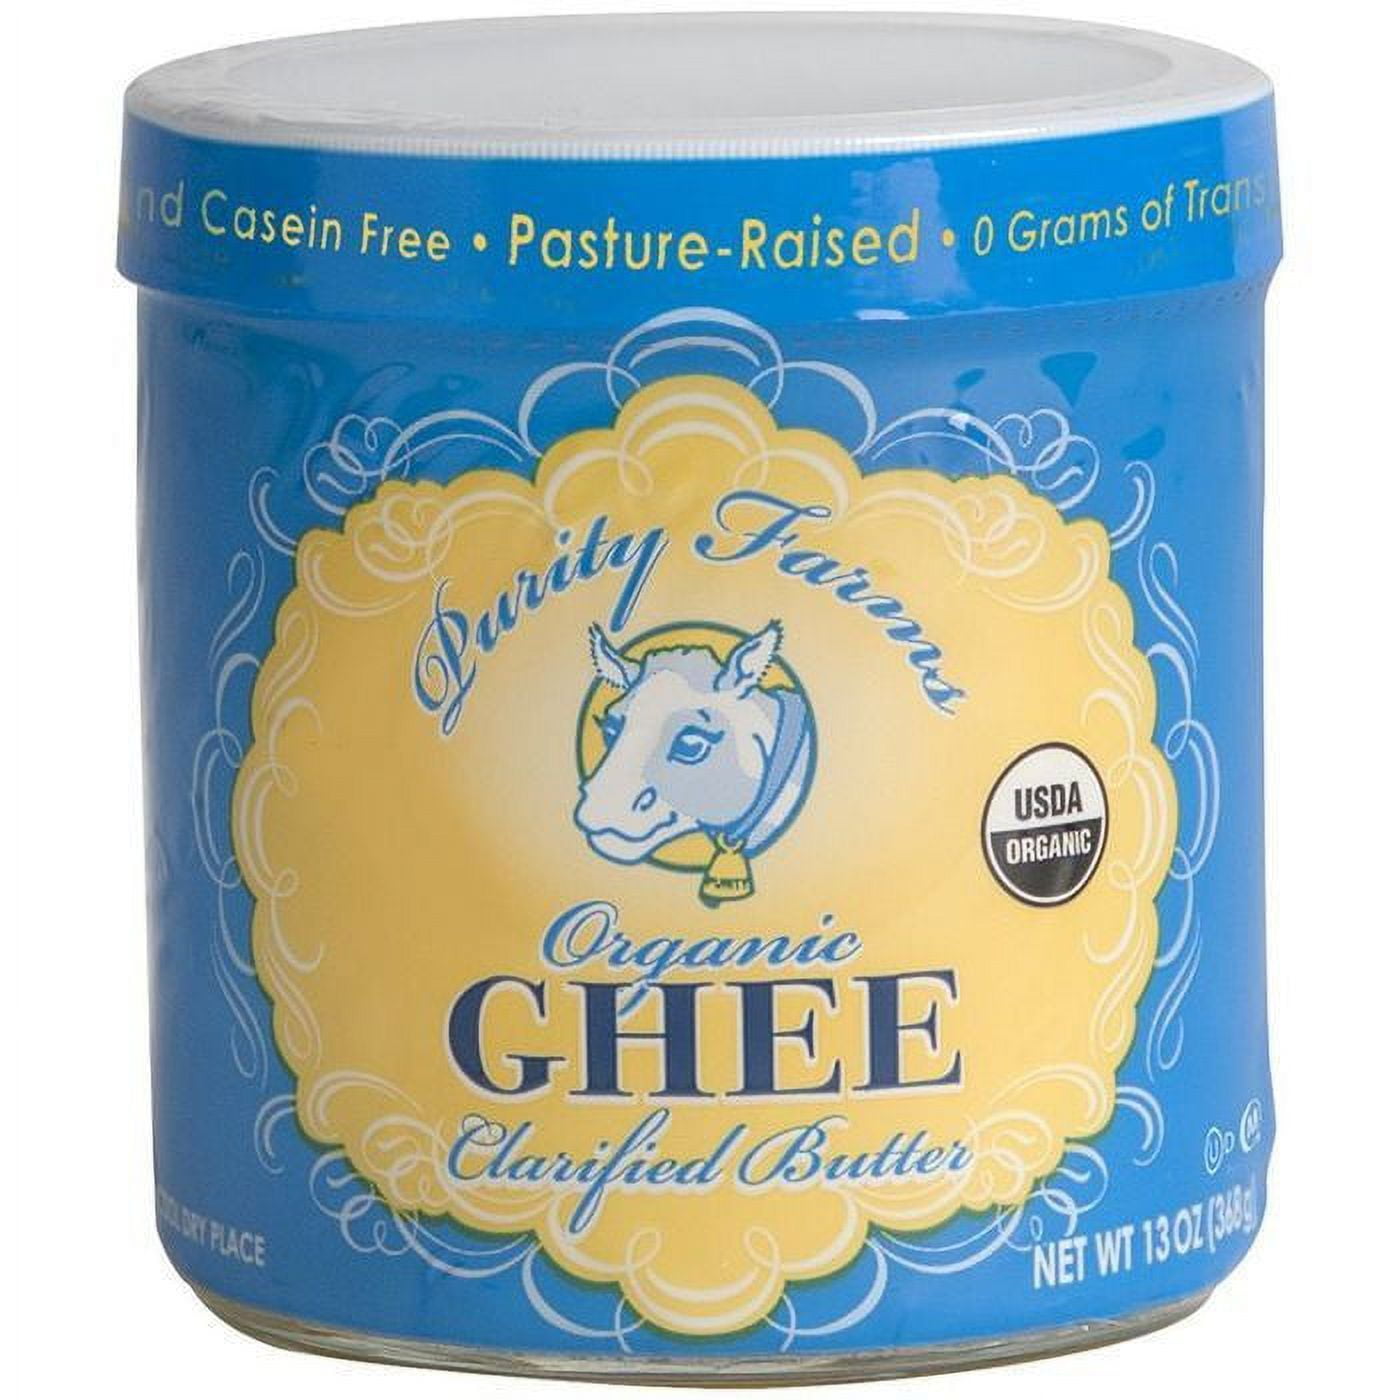 Ghee Bio Clarified Butter 230